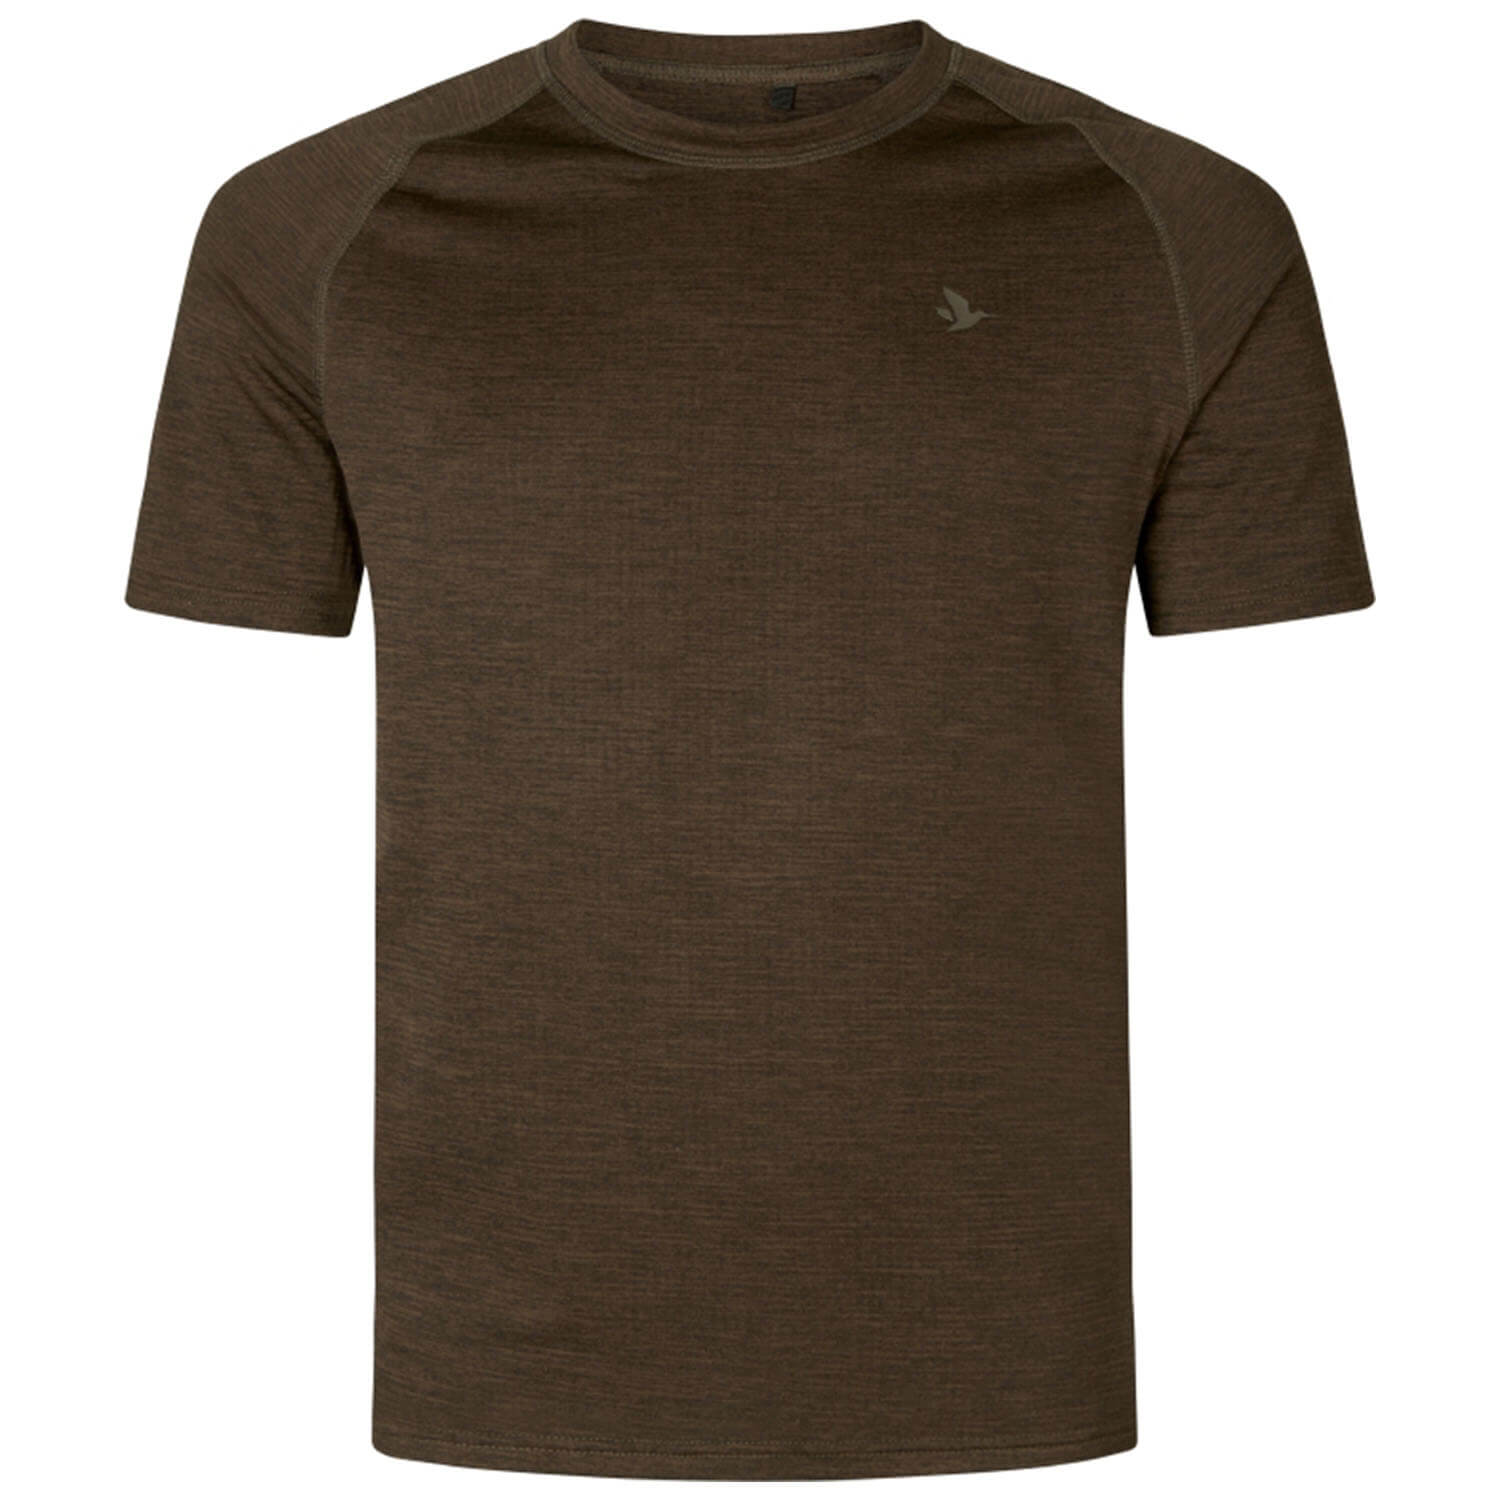  Seeland Active T-shirt (Demitasse bruin) - Overhemden & shirts